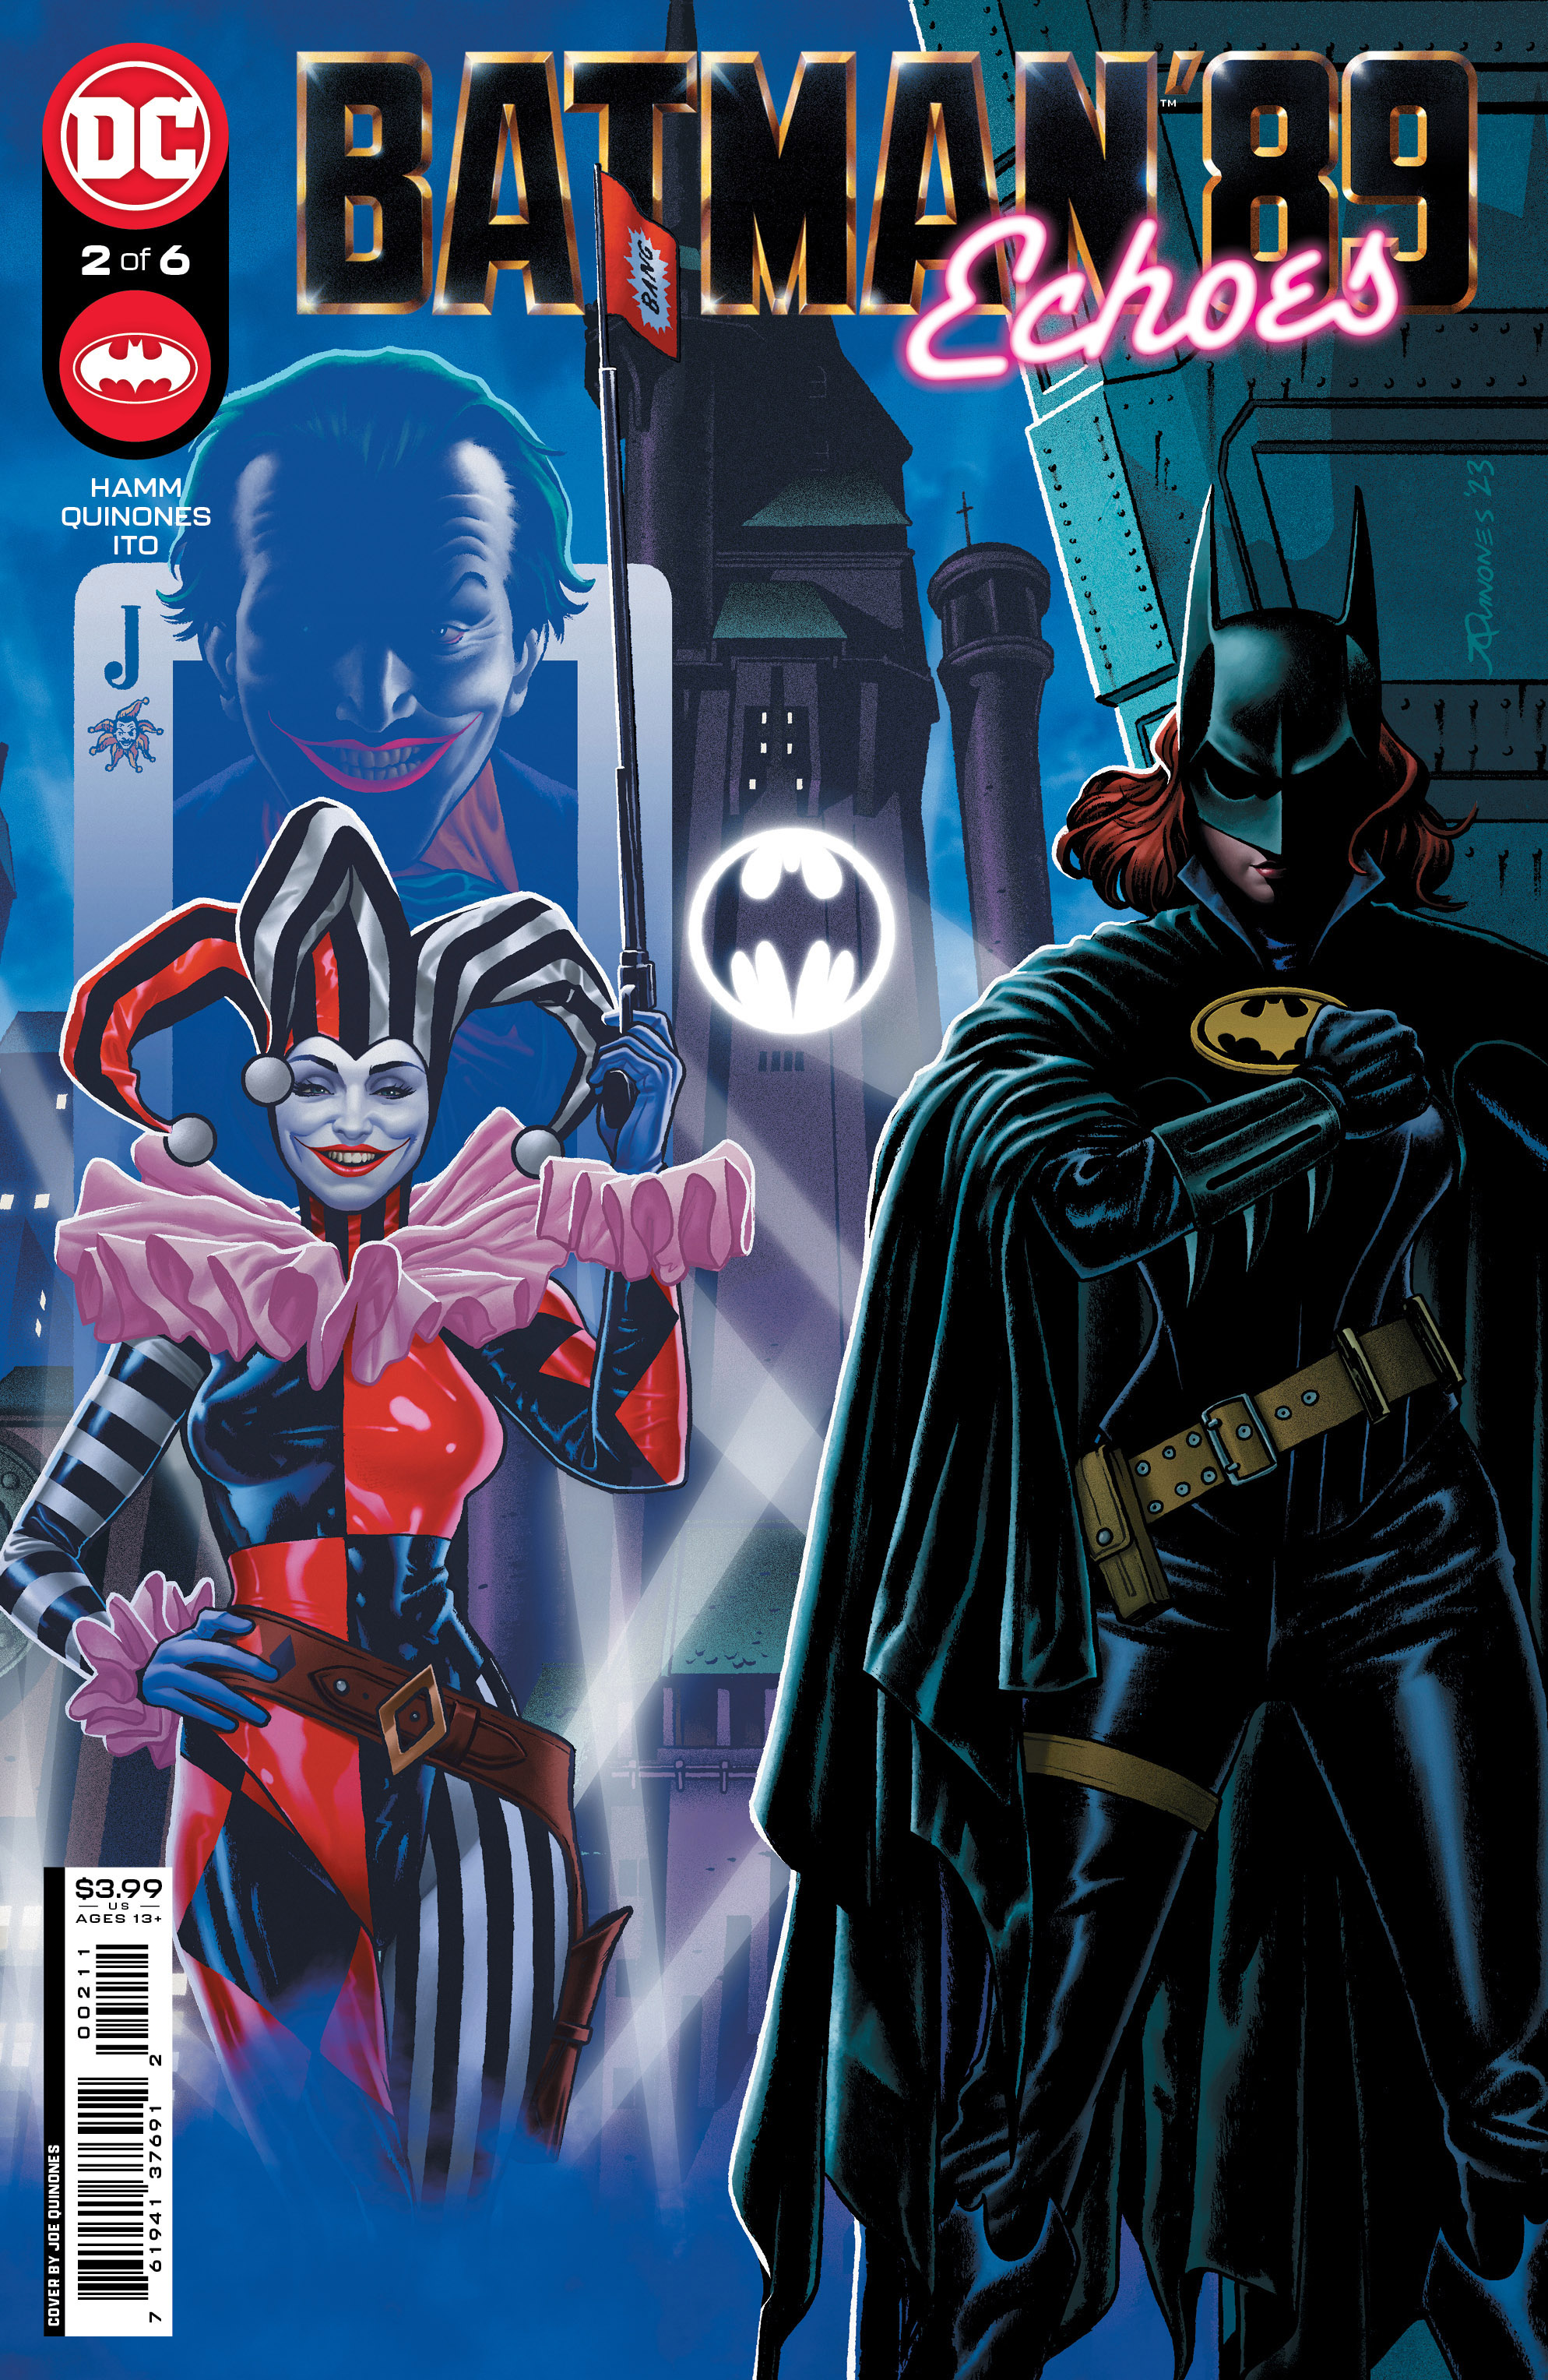 Batman '89 Echoes #2 Cover A Joe Quinones (Of 6)